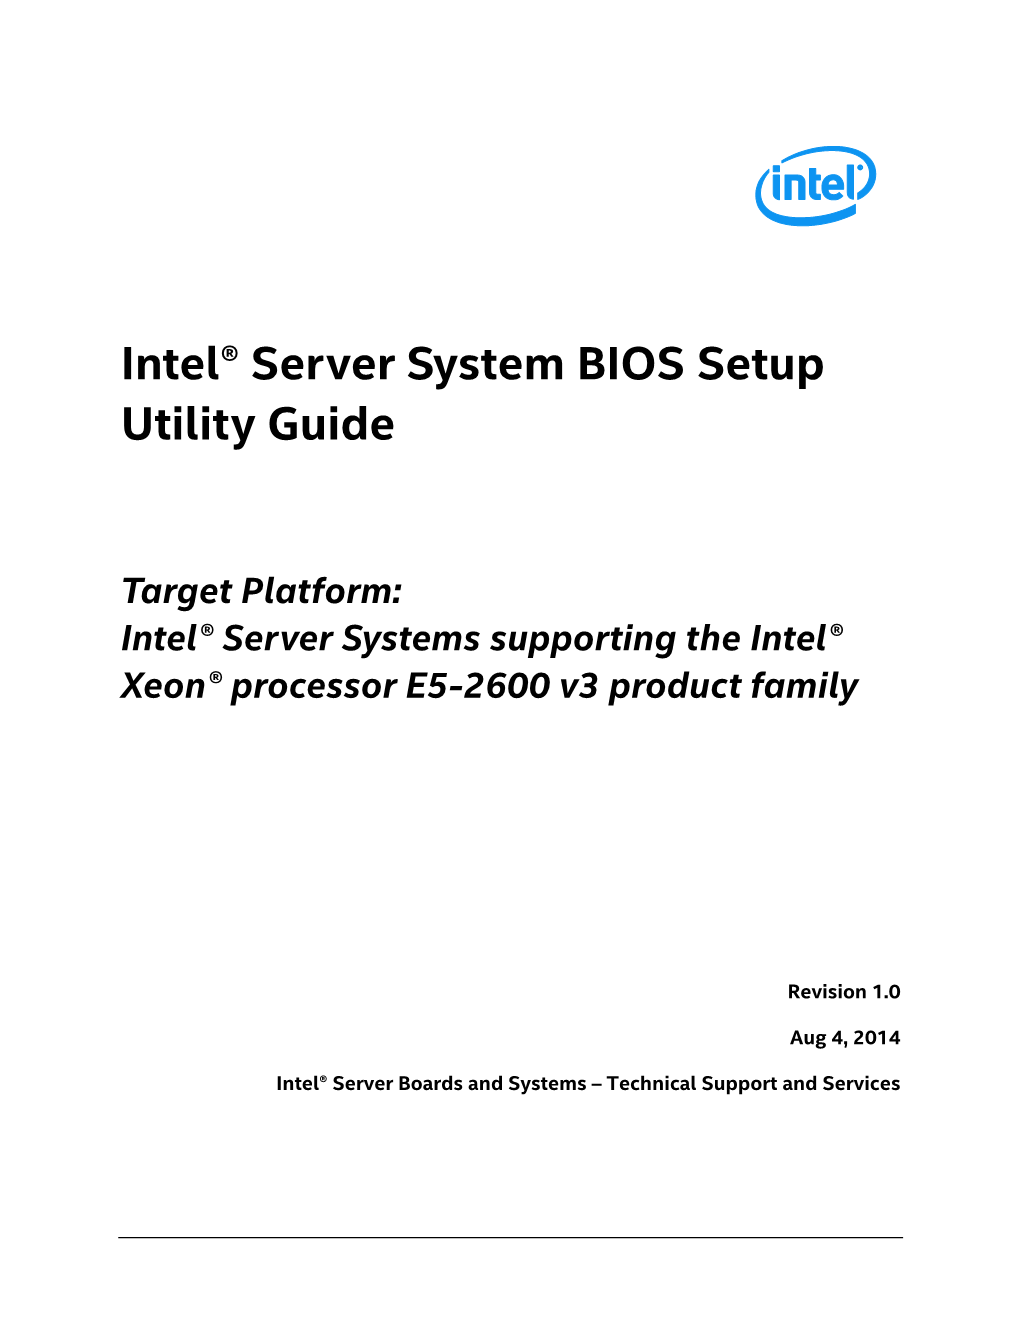 Intel® Server System BIOS Setup Utility Guide